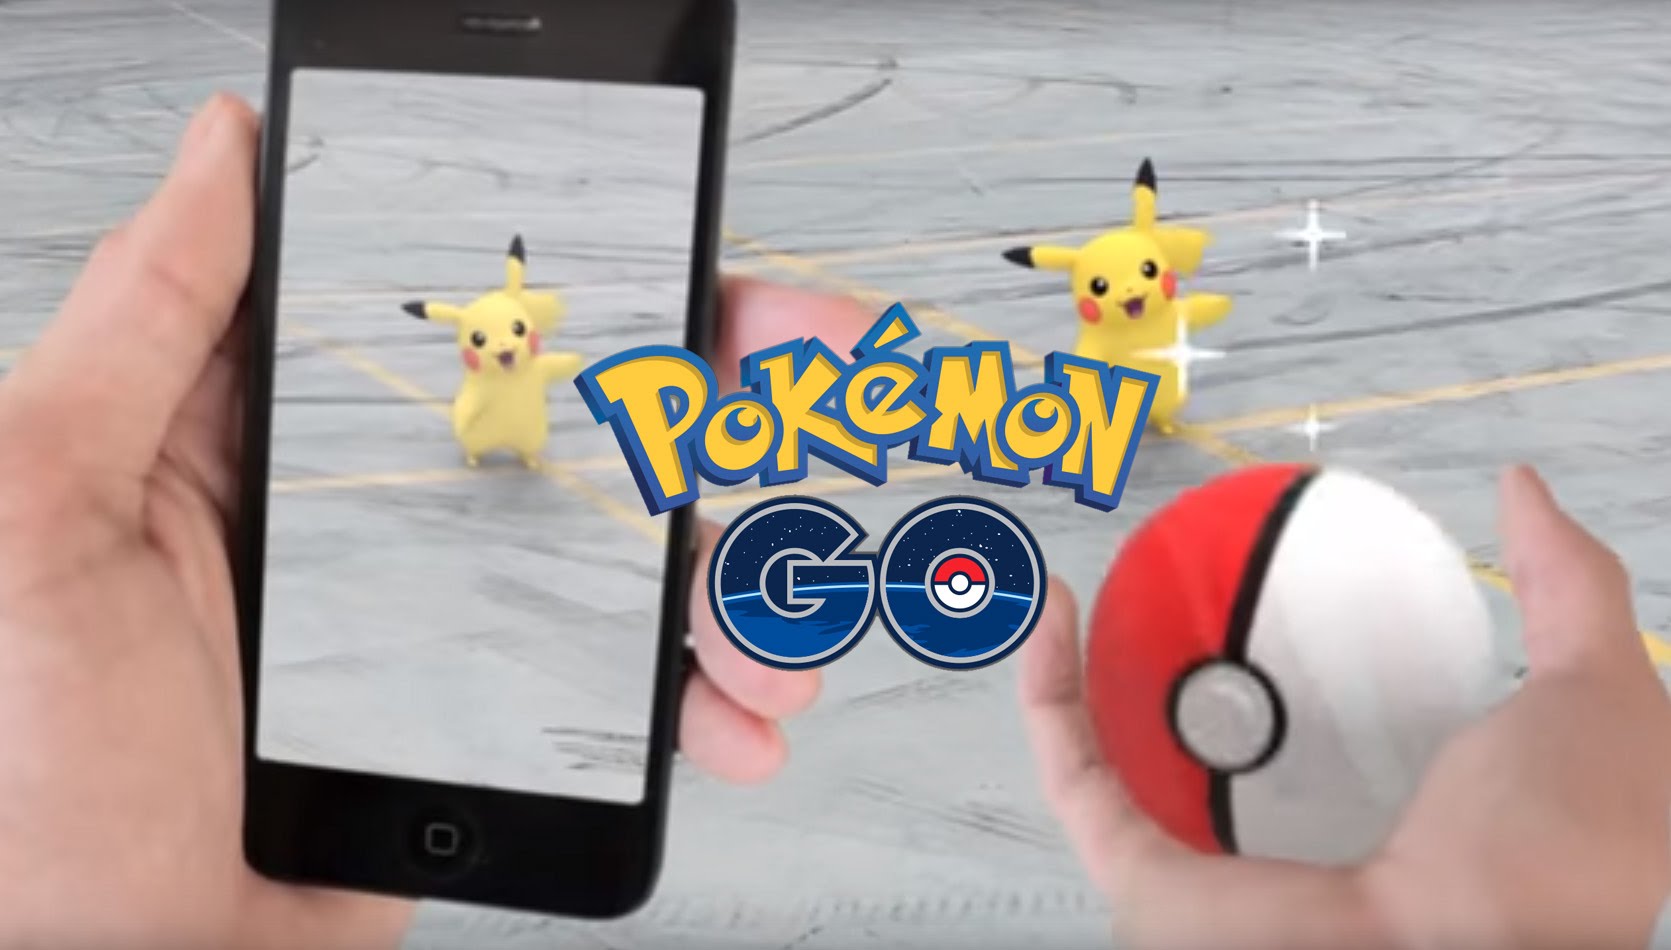 Дополнительный носимый Bluetooth-носитель, Pokémon Go Plus, планируется к выпуску в будущем и будет оповещать пользователей, когда покемон находится поблизости